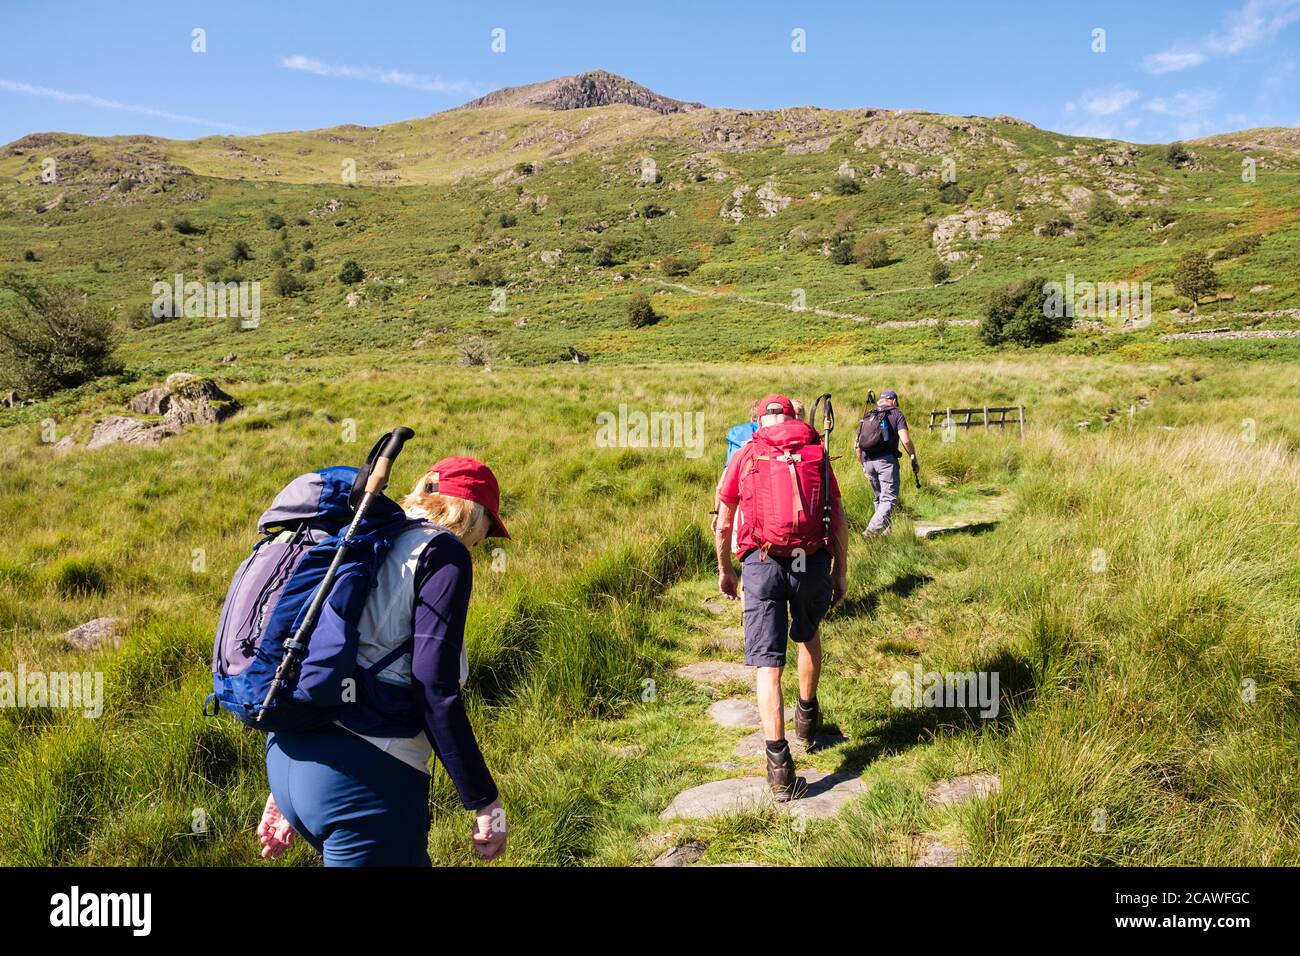 Randonneurs en randonnée sur le chemin de la montagne Moel Hebog dans les montagnes du parc national de Snowdonia. Beddgelert, Gwynedd, pays de Galles, Royaume-Uni, Grande-Bretagne Banque D'Images